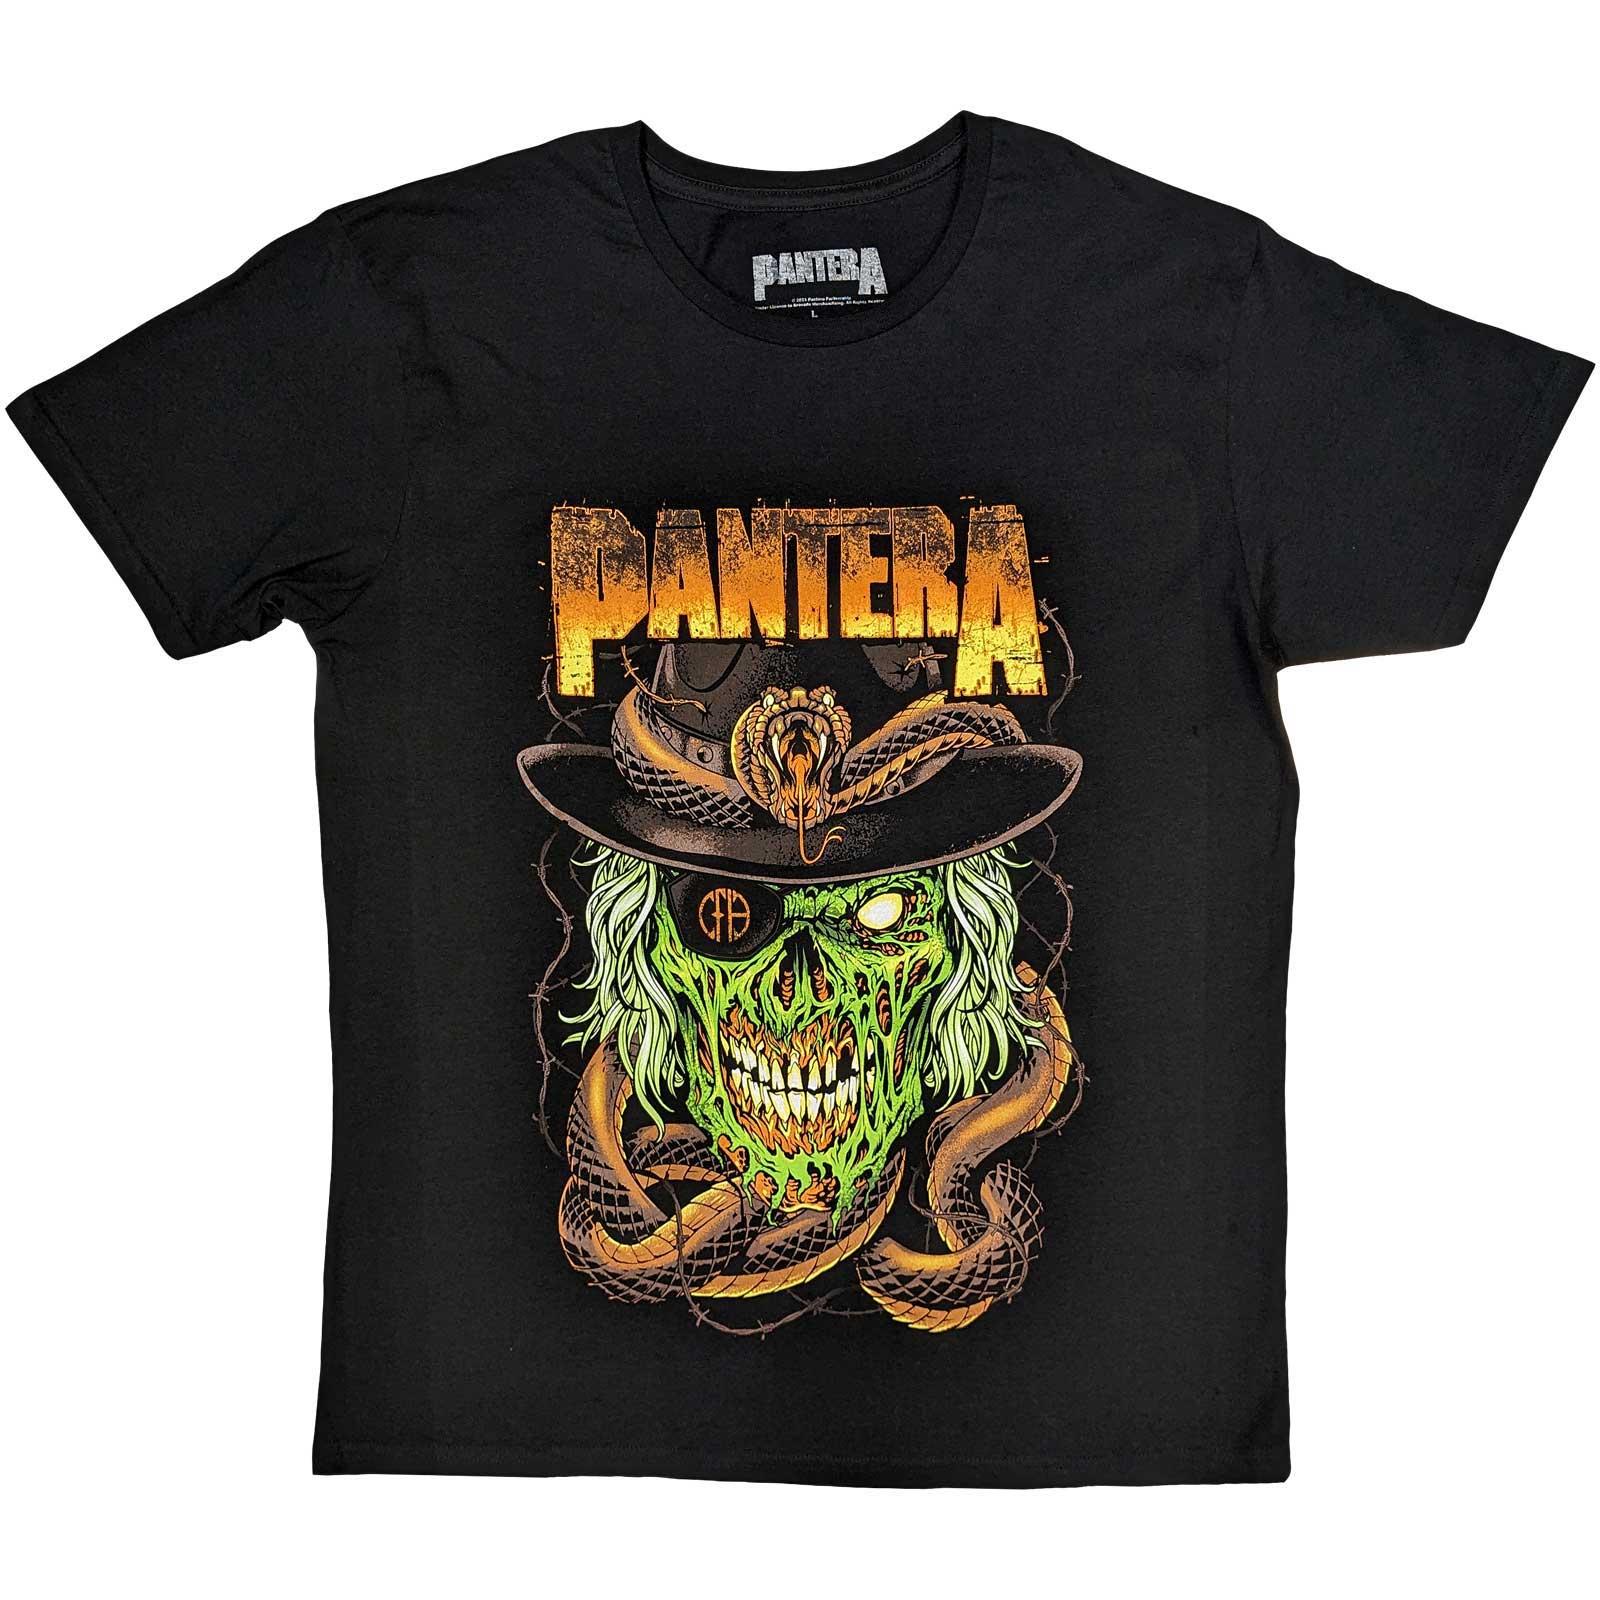 (パンテラ) Pantera オフィシャル商品 ユニセックス Skull & Snake Tシャツ コットン 半袖 トップス 【海外通販】